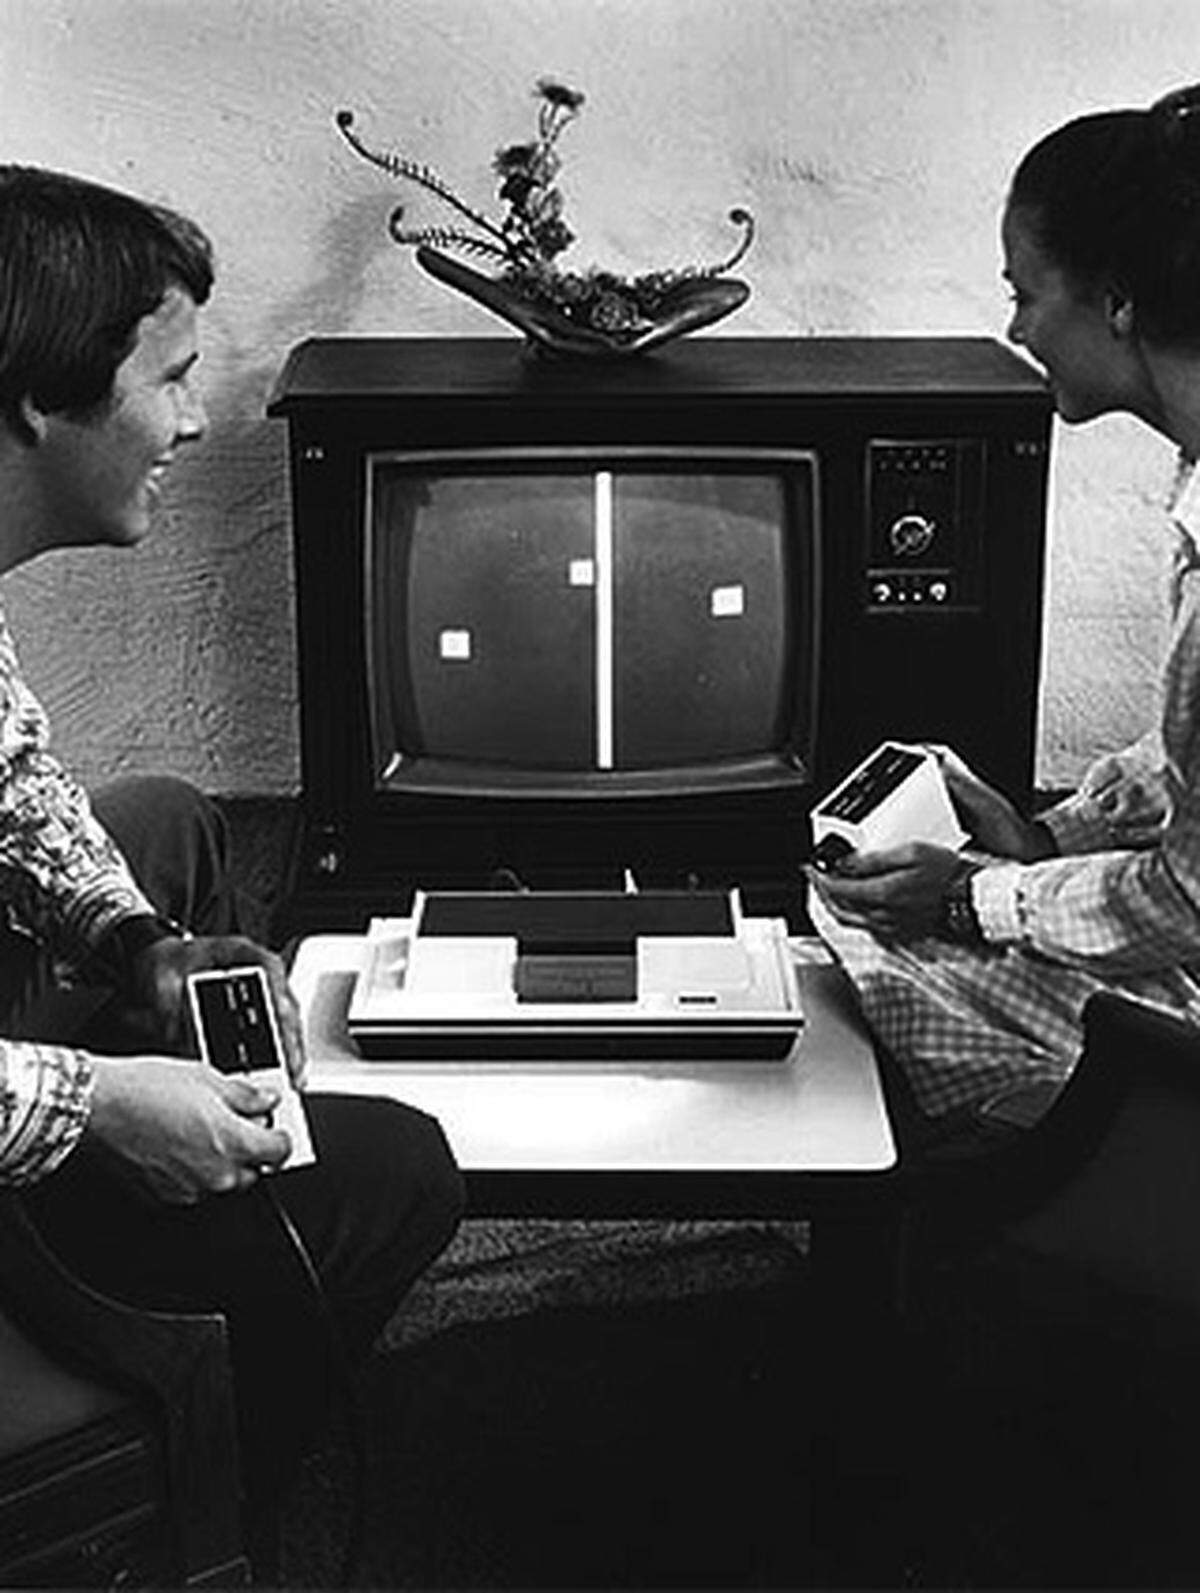 Im Jahr 1972 kam mit der "Magnavox Odyssey" die erste Spielkonsole der Welt auf den Markt. Sie verfügte weder über Arbeitsspeicher noch über einen Prozessor, sondern basierte auf analogen Schaltkreisen.  Da nur wenige weiße Punkte und Blöcke dargestellt werden konnten, musste bei einigen Spielen zuvor das Spielfeld in Form einer Plastikfolie auf dem Fernseher angebracht werden.  Außerdem war das Gerät als reines Mehrspielersystem konzipiert. Wegen des fehlenden Prozessors war es nicht möglich, gegen den Computer anzutreten.  Eines der erste Spiele war "Pong" (Bild).